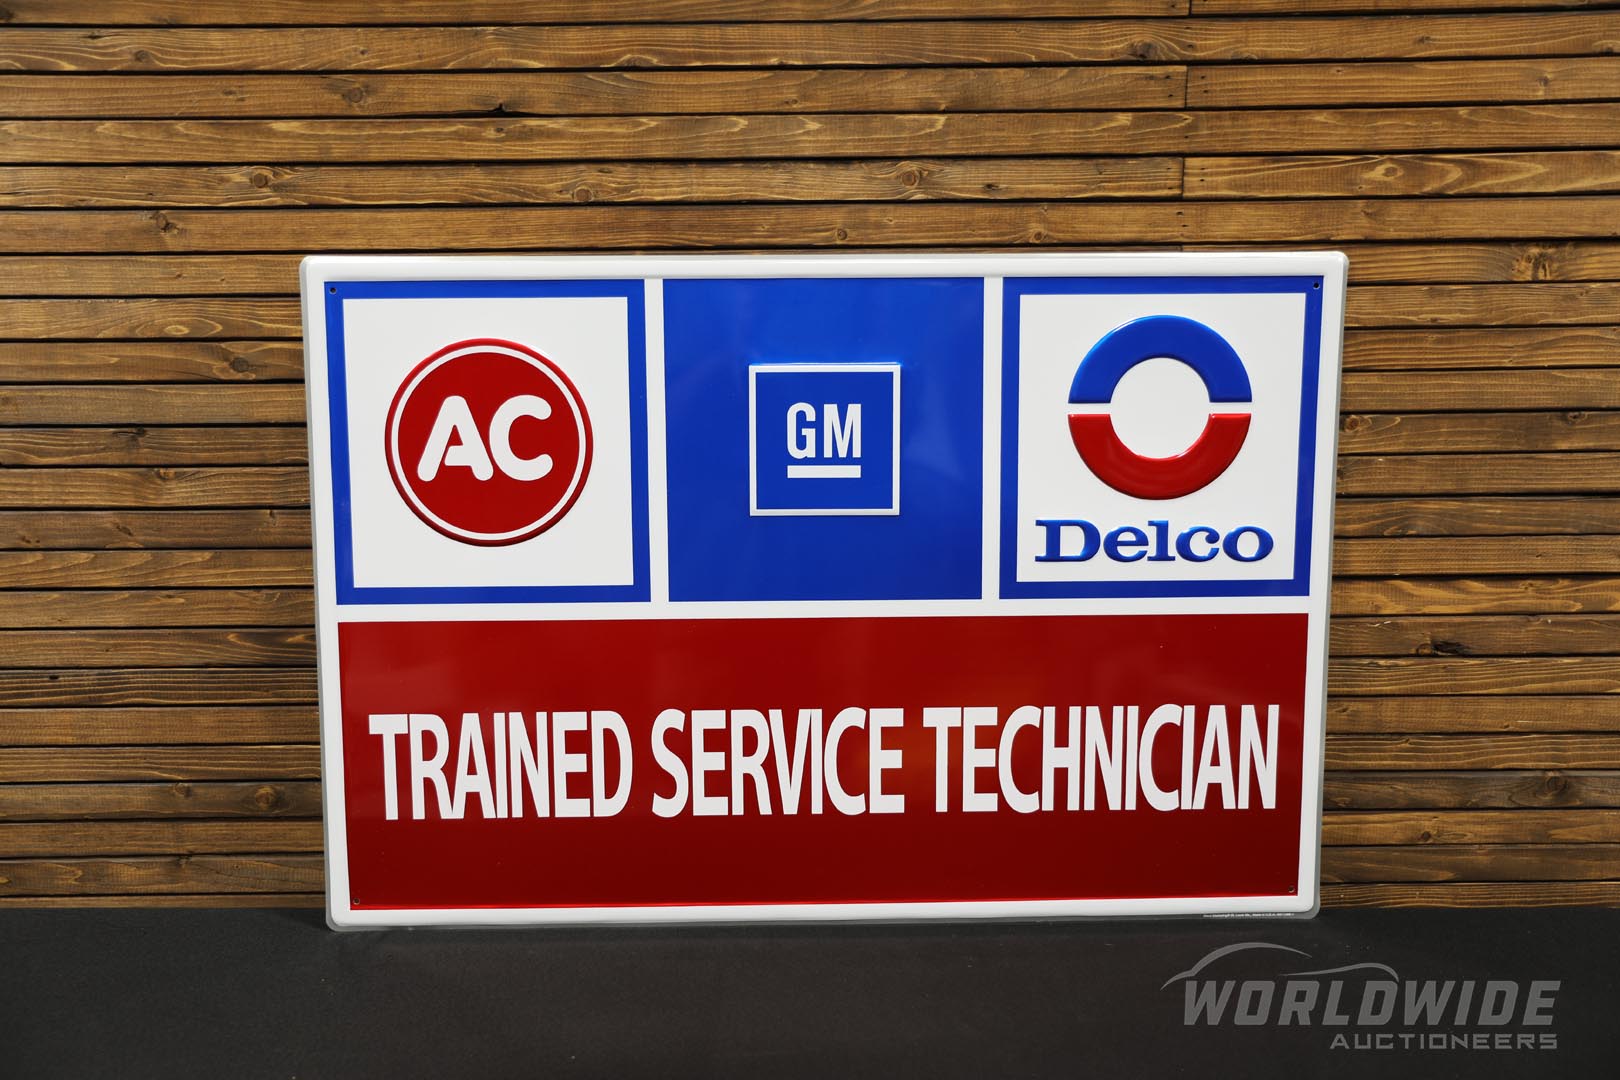  AC GM Delco Trained Service Te chnician Tin Sign 